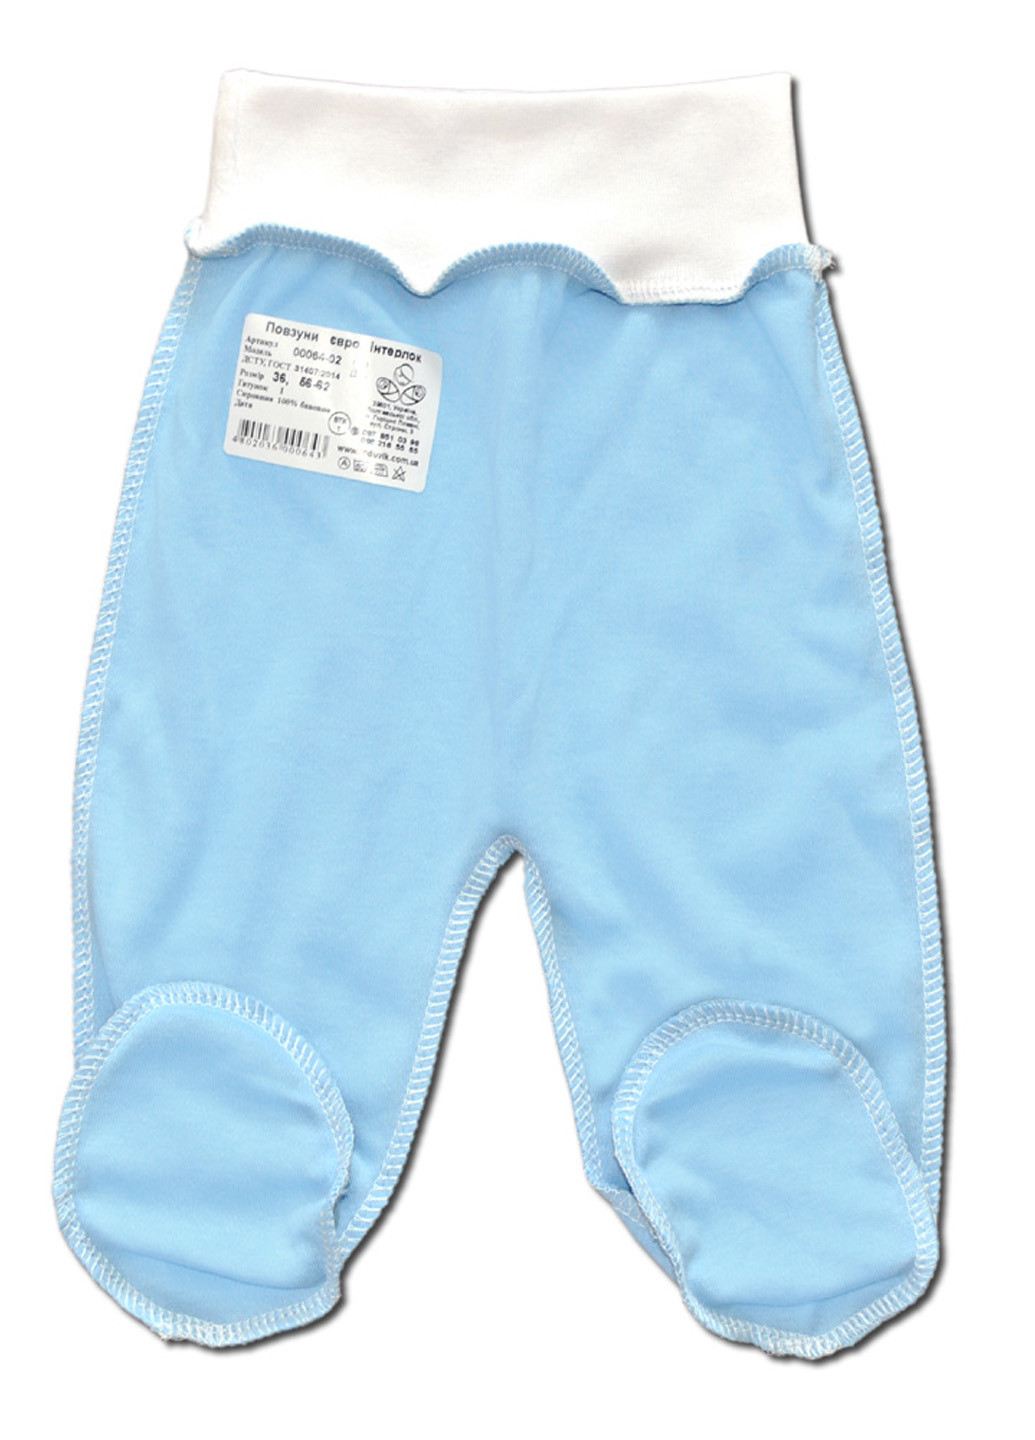 Голубой демисезонный комплект одежды для малышей №8 (7предметов) тм коллекция капитошка голубой Родовик комплект БХГ